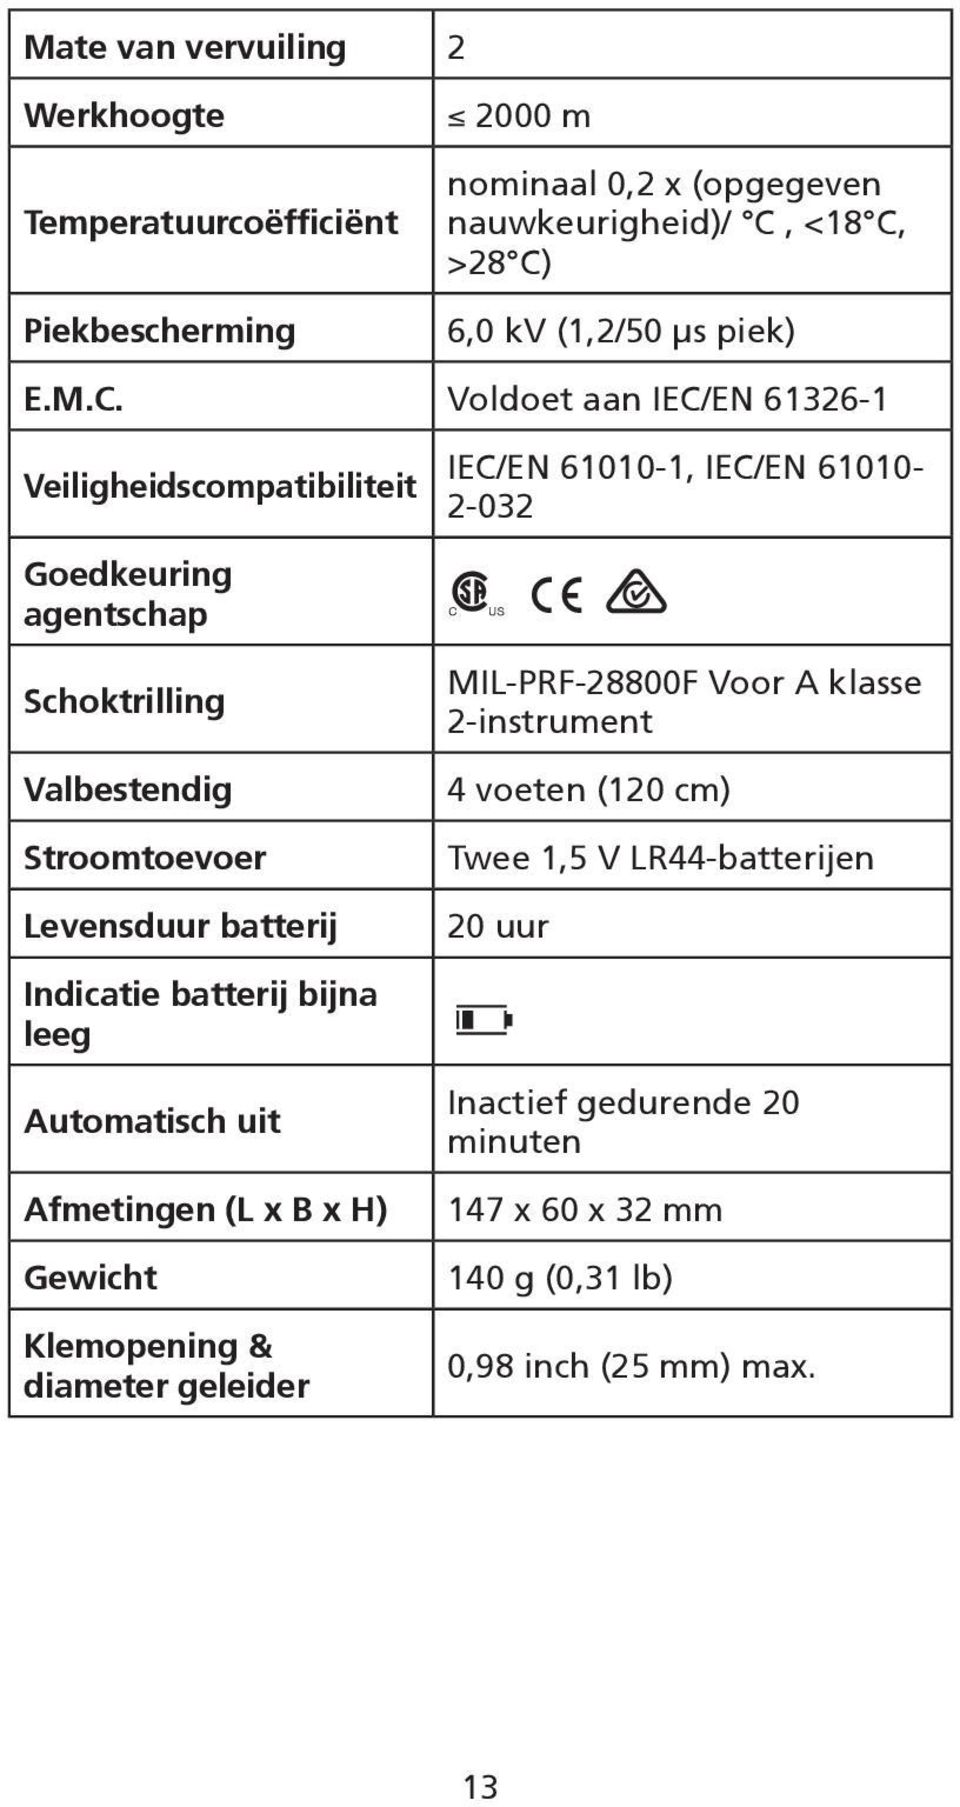 Voldoet aan IEC/EN 61326-1 Veiligheidscompatibiliteit Goedkeuring agentschap Schoktrilling Valbestendig Stroomtoevoer Levensduur batterij Indicatie batterij